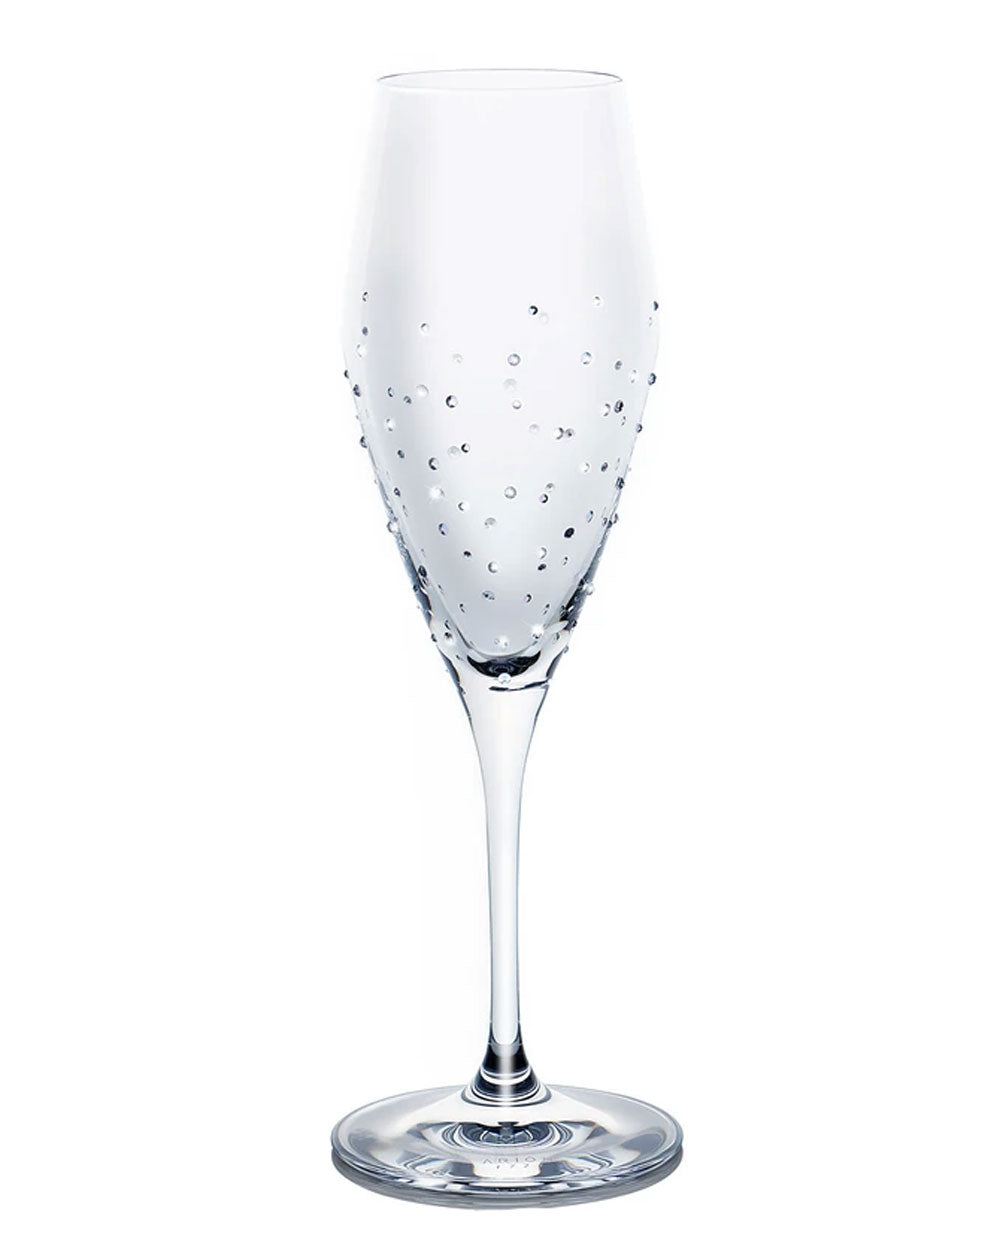 Marques De Povar Champagne Glasses Set of 4